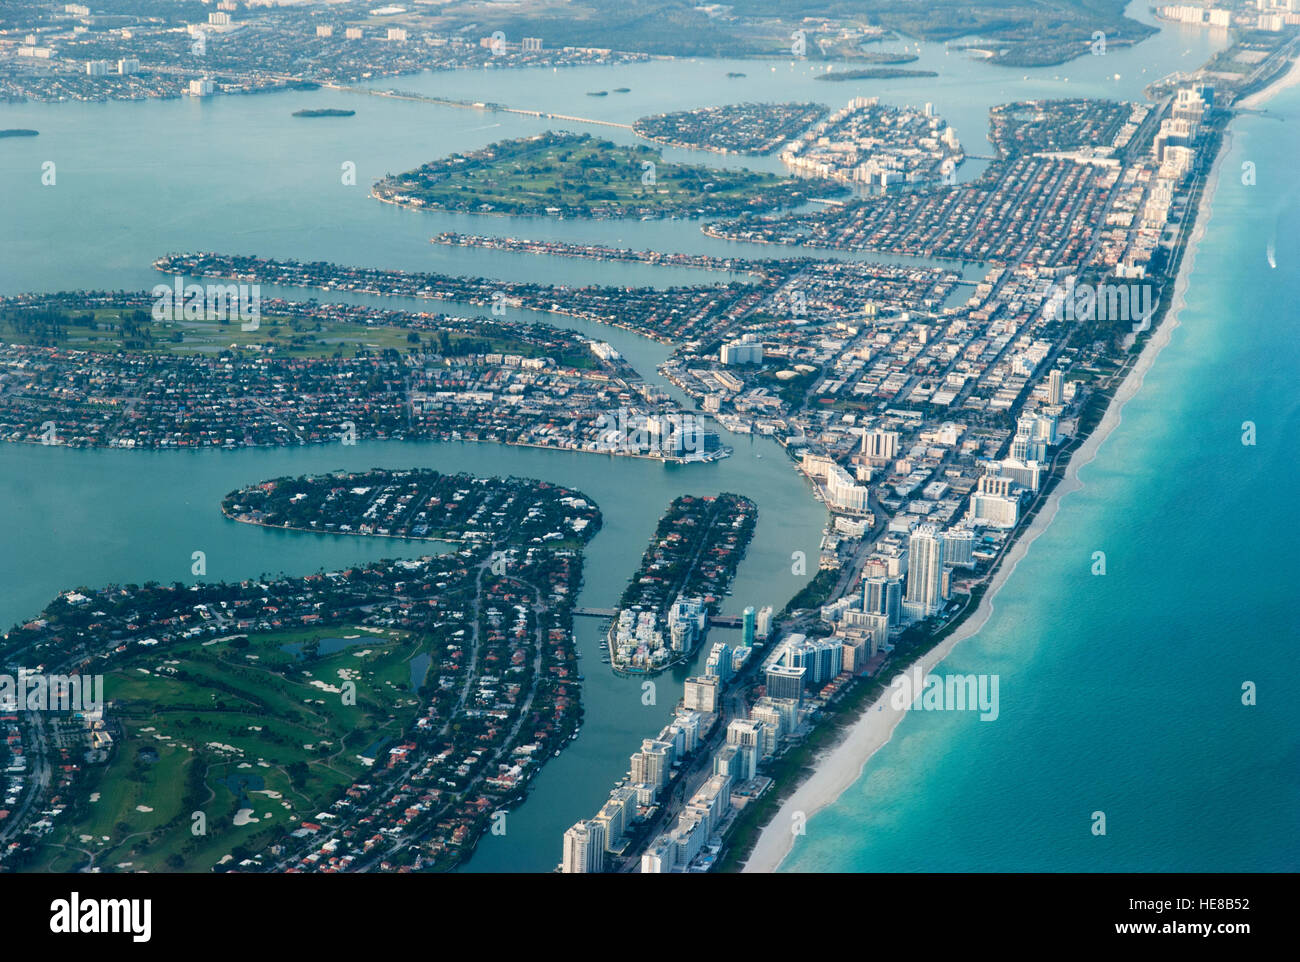 The aerial view of Miami Beach (Florida). Stock Photo